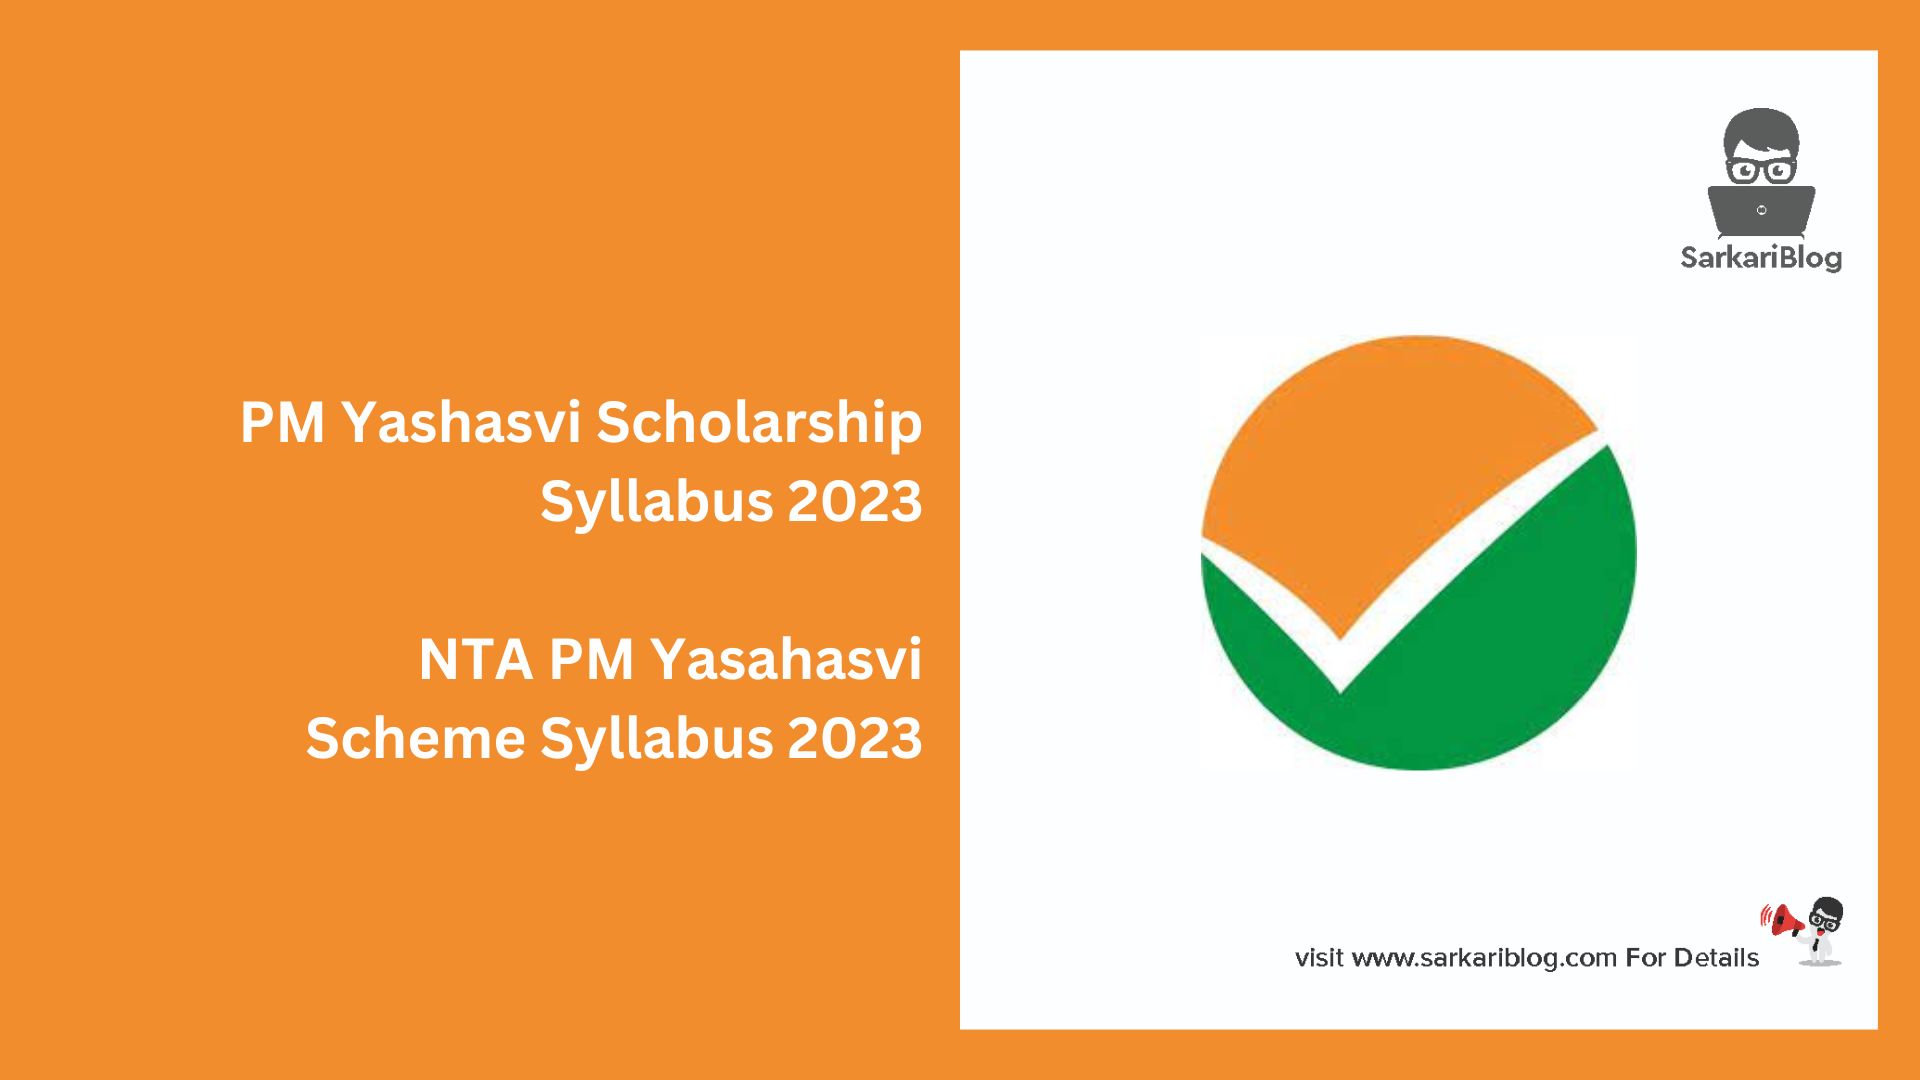 PM Yashasvi Scholarship Syllabus 2023